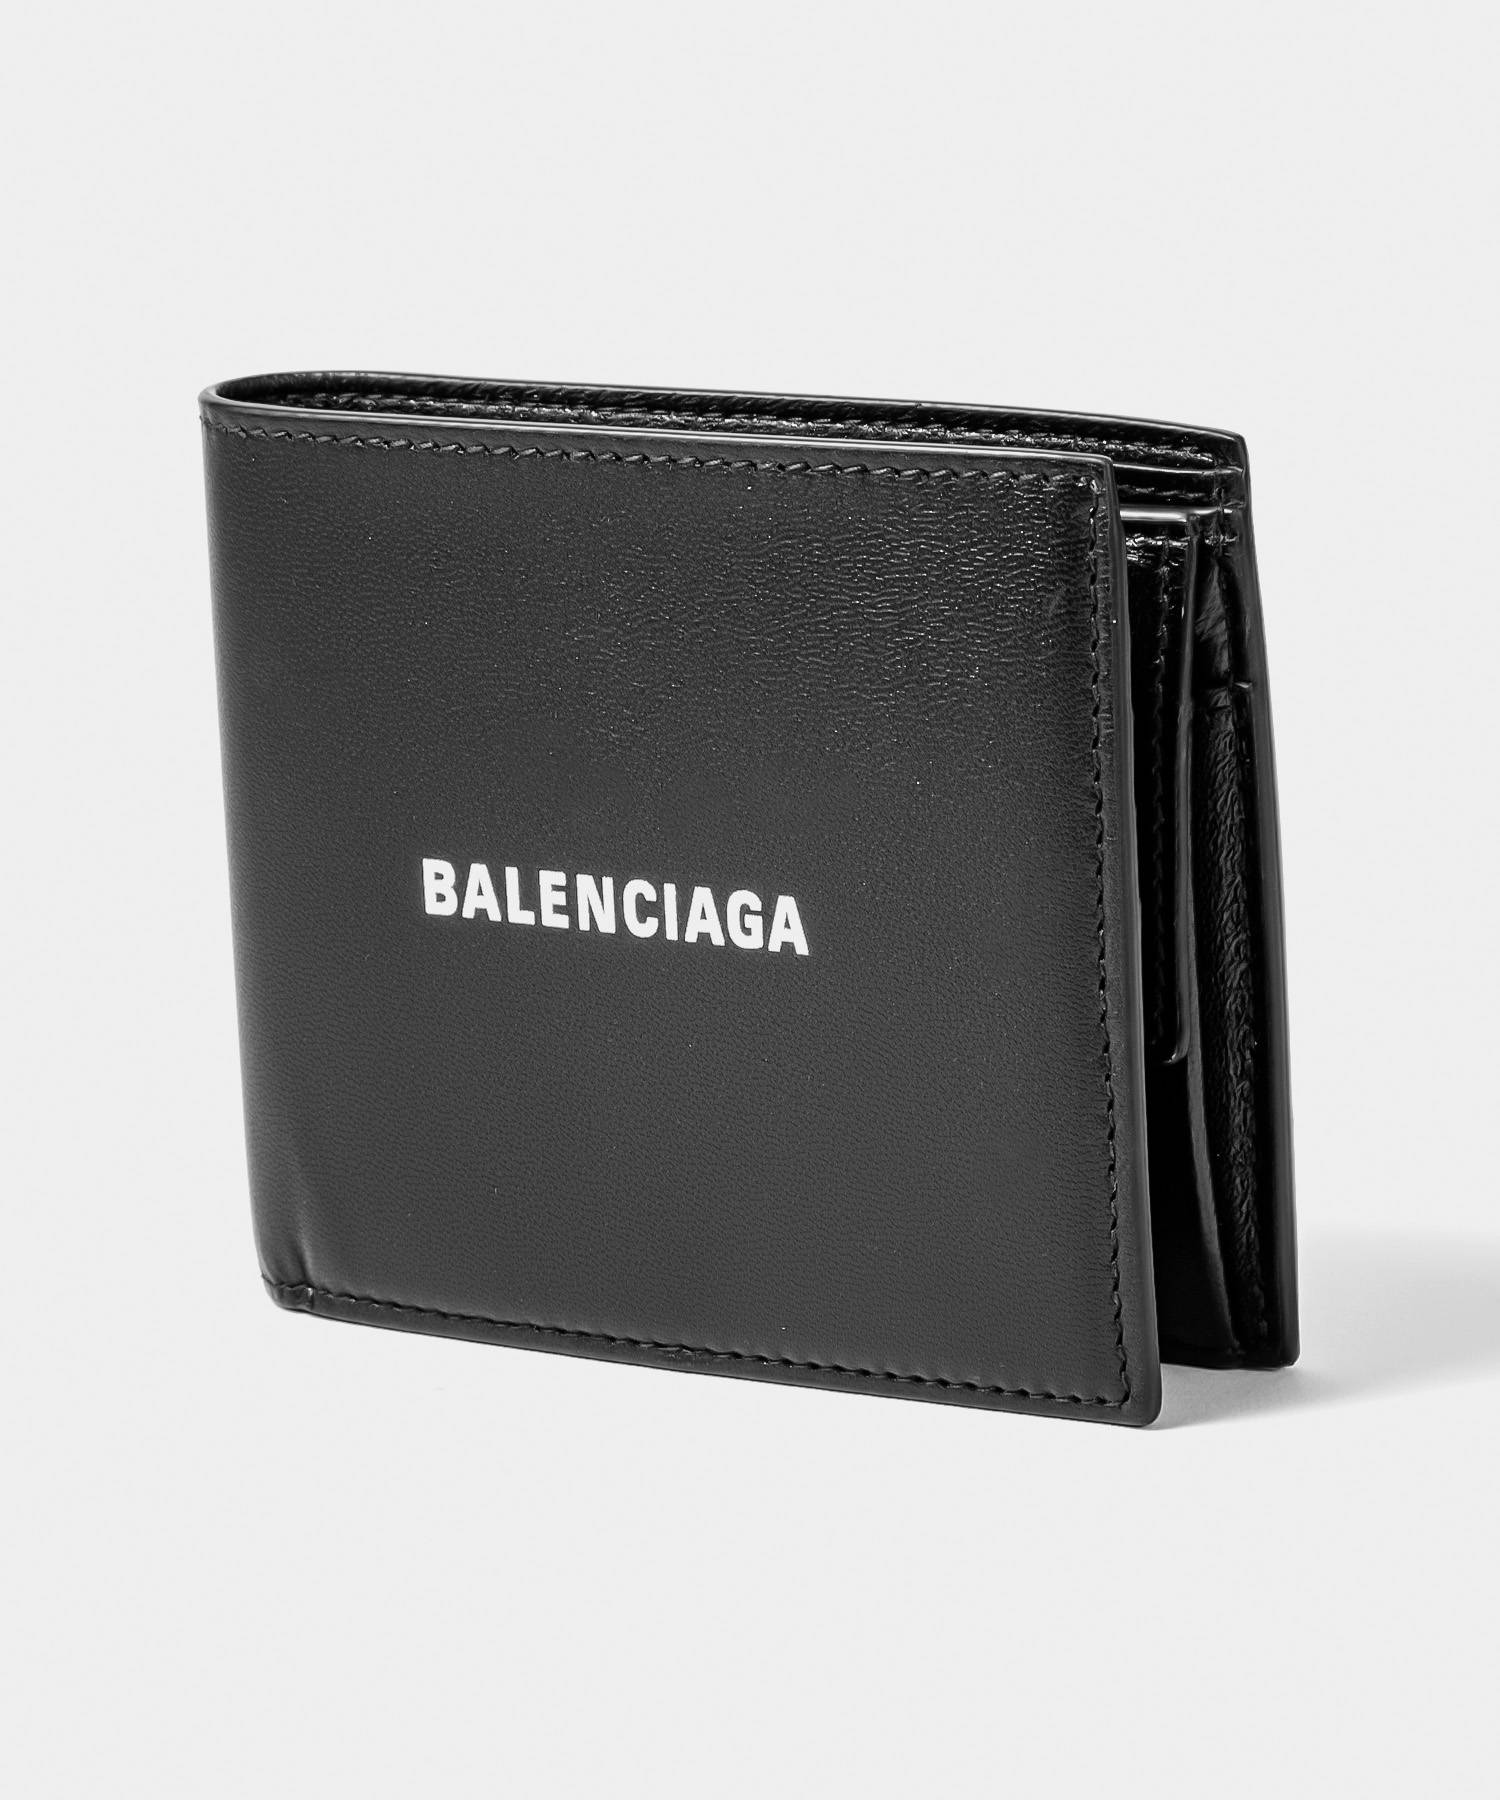 バレンシアガ BALENCIAGA 594315 1I353 二つ折り財布 メンズ 財布 ミニ